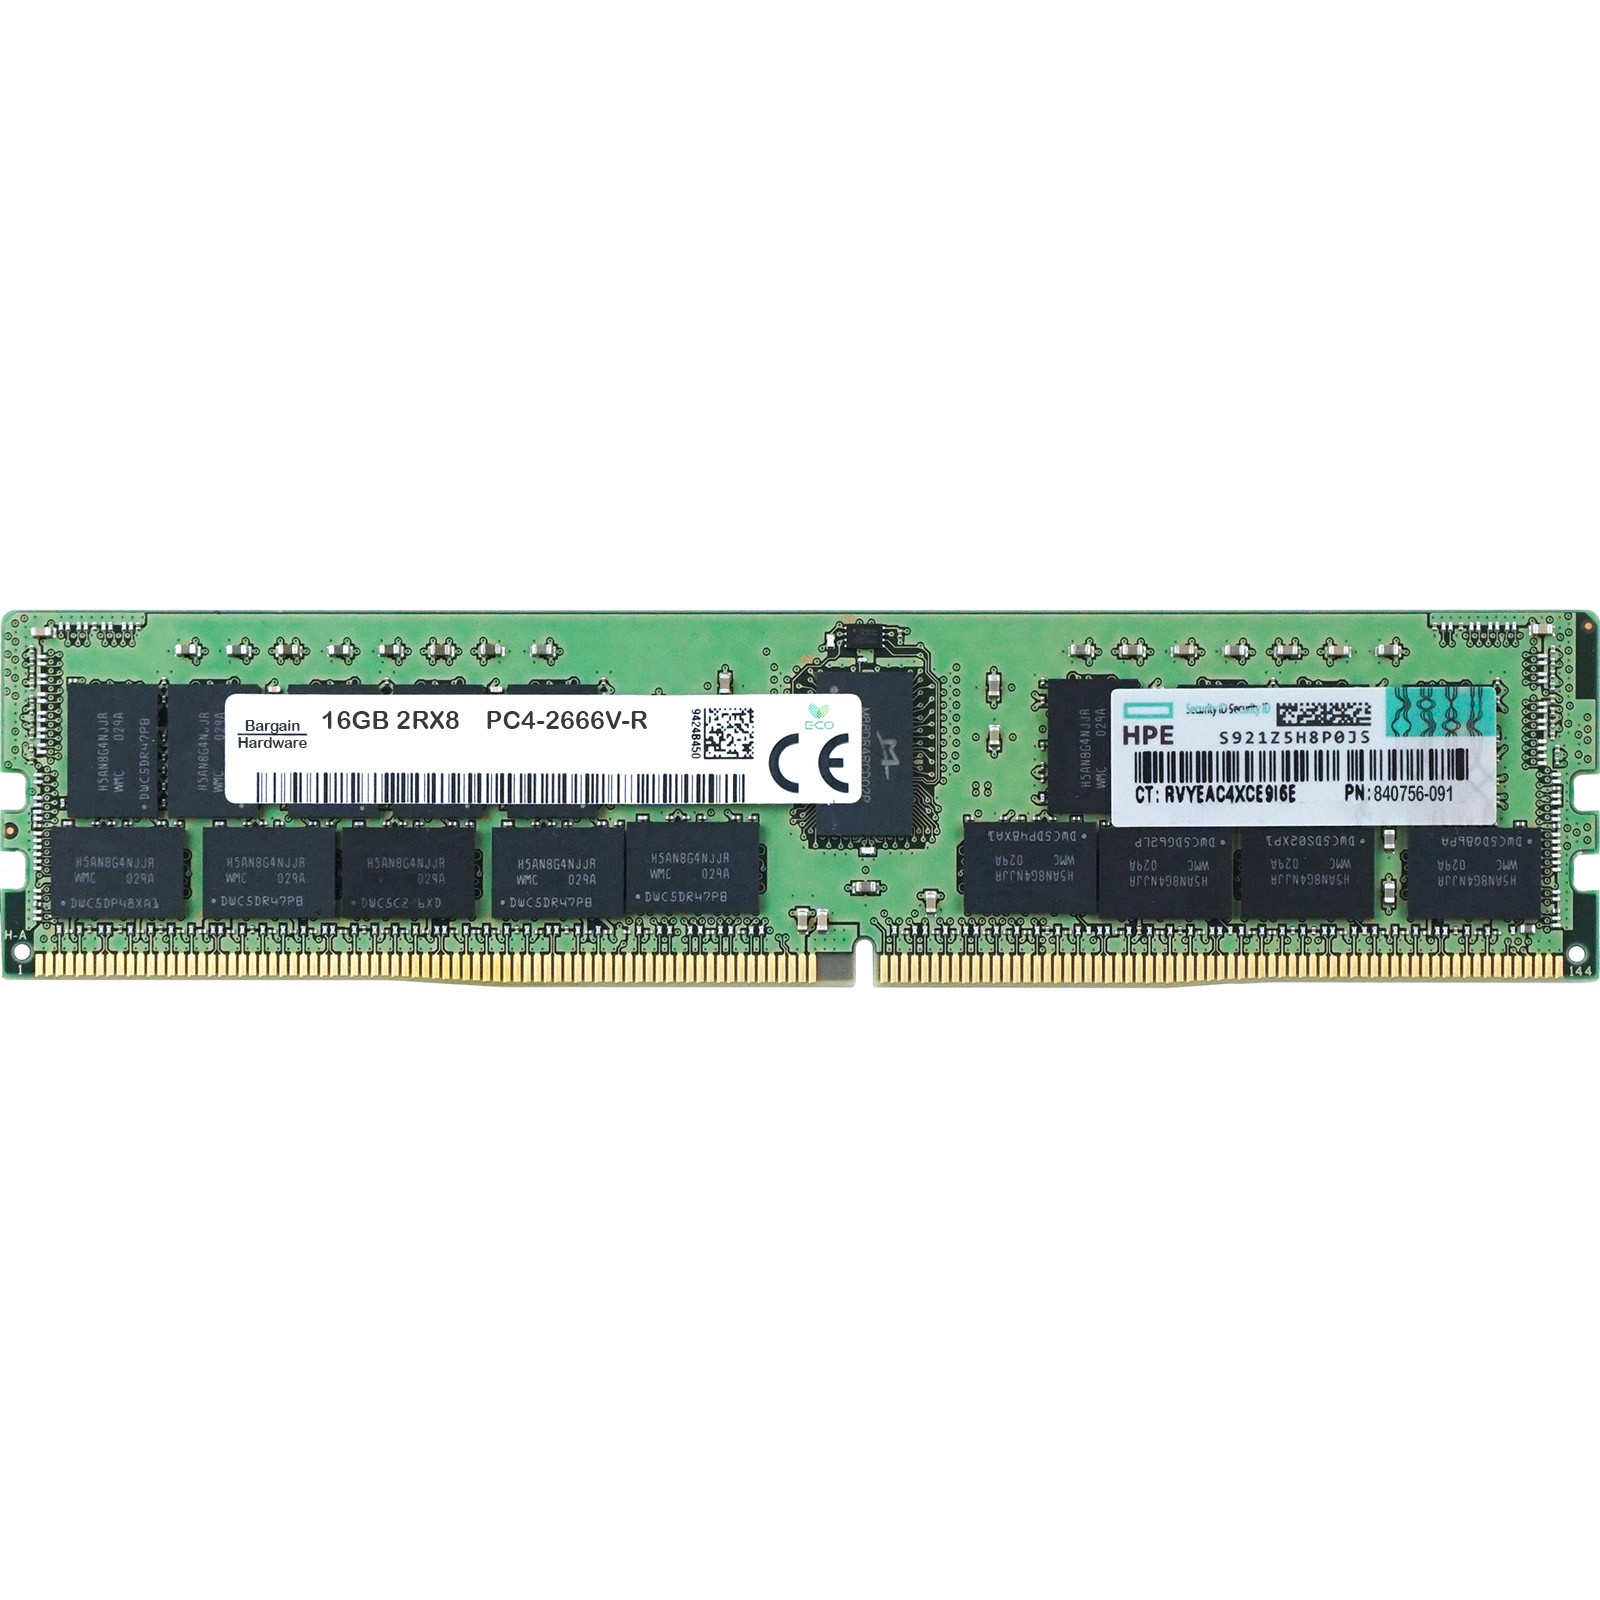 HP (840756-091) - 16GB -PC4-21300V-R (2RX8, DDR4-2666MHz) RAM